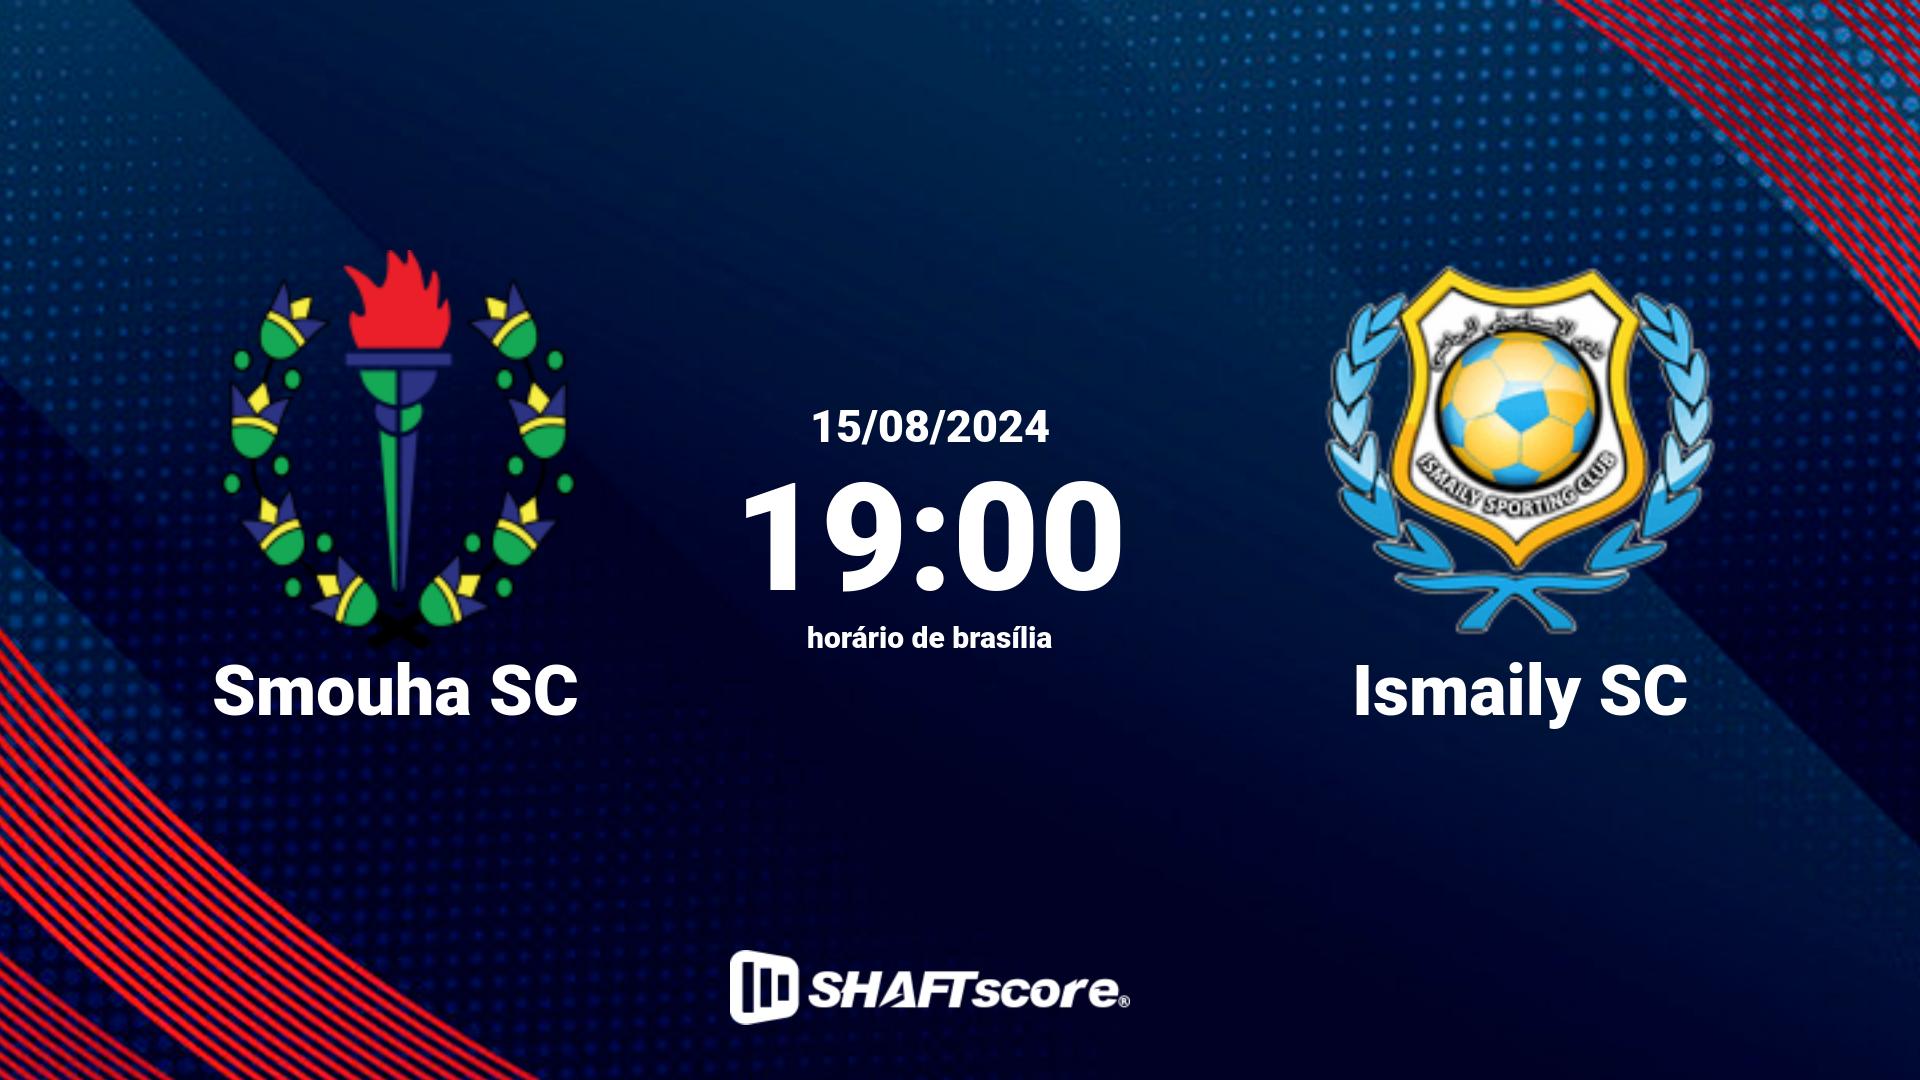 Estatísticas do jogo Smouha SC vs Ismaily SC 15.08 19:00